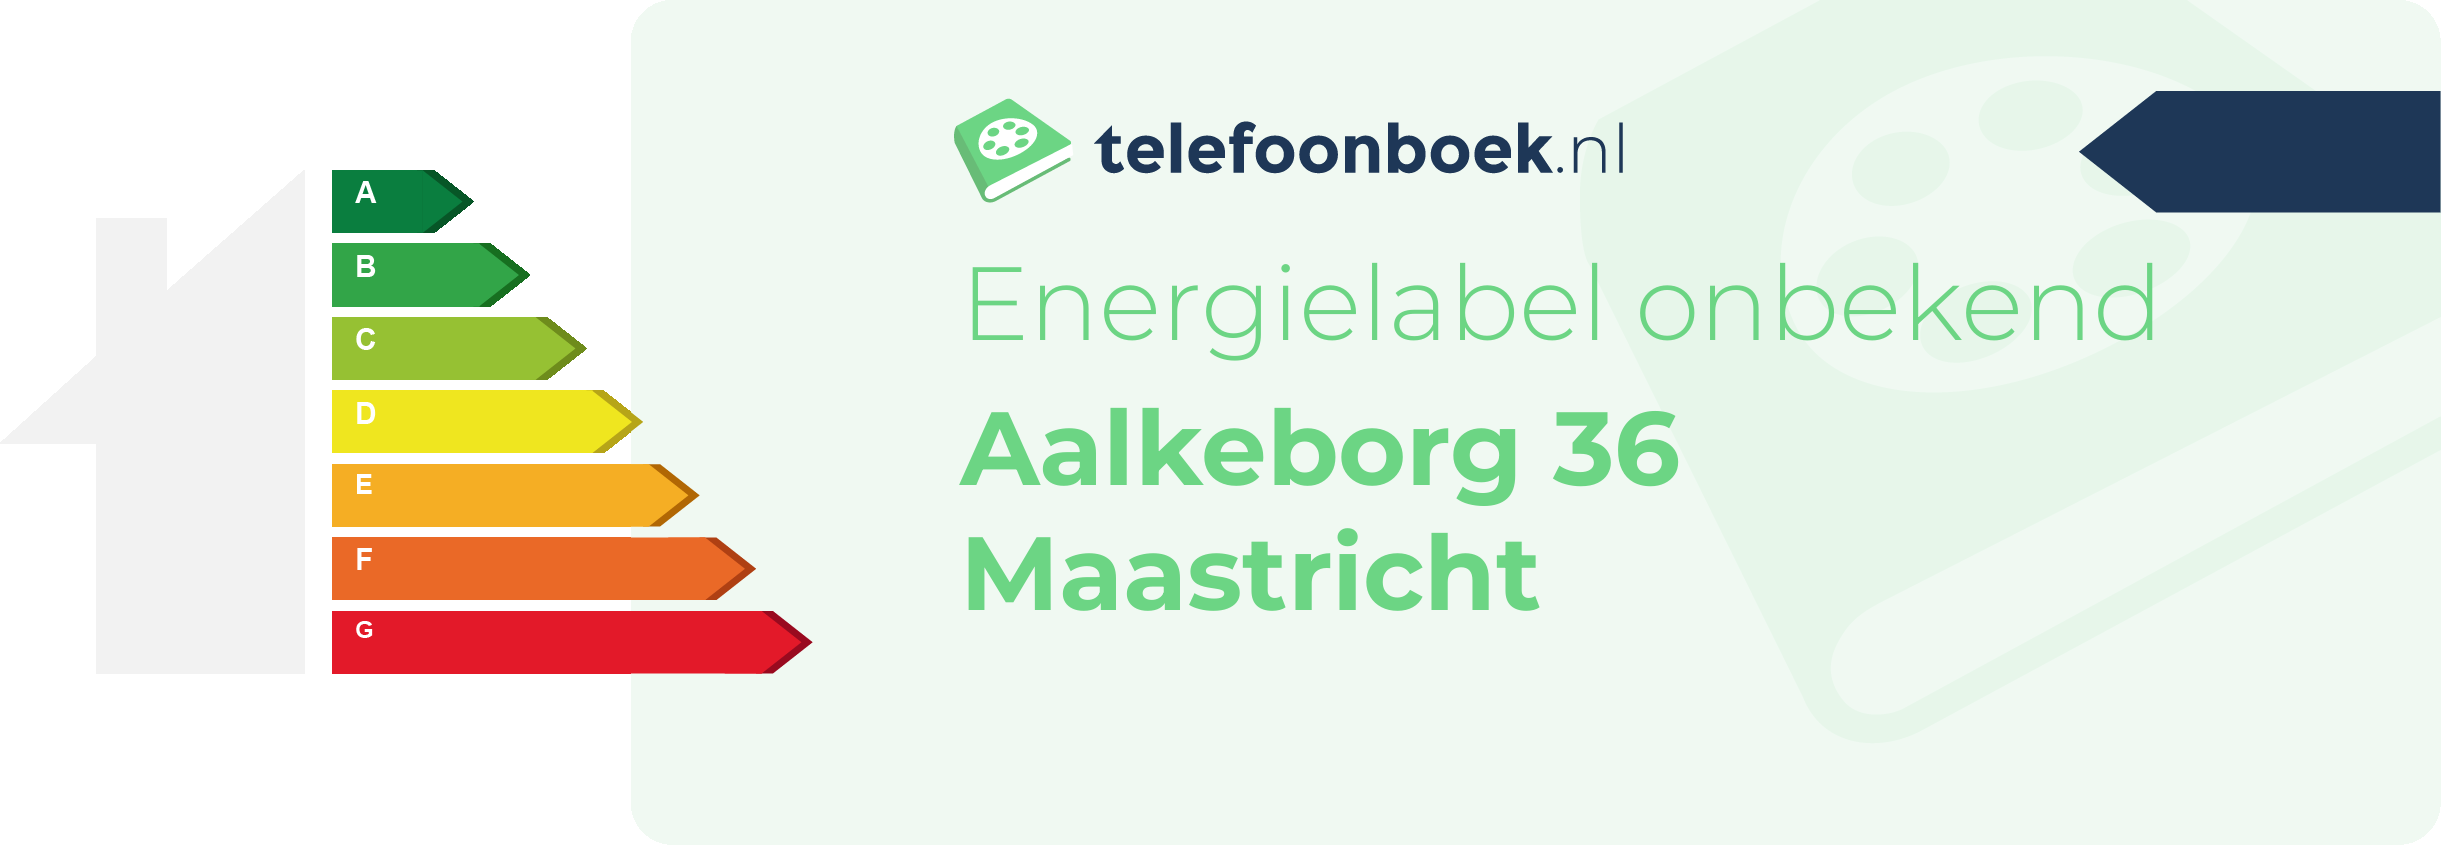 Energielabel Aalkeborg 36 Maastricht